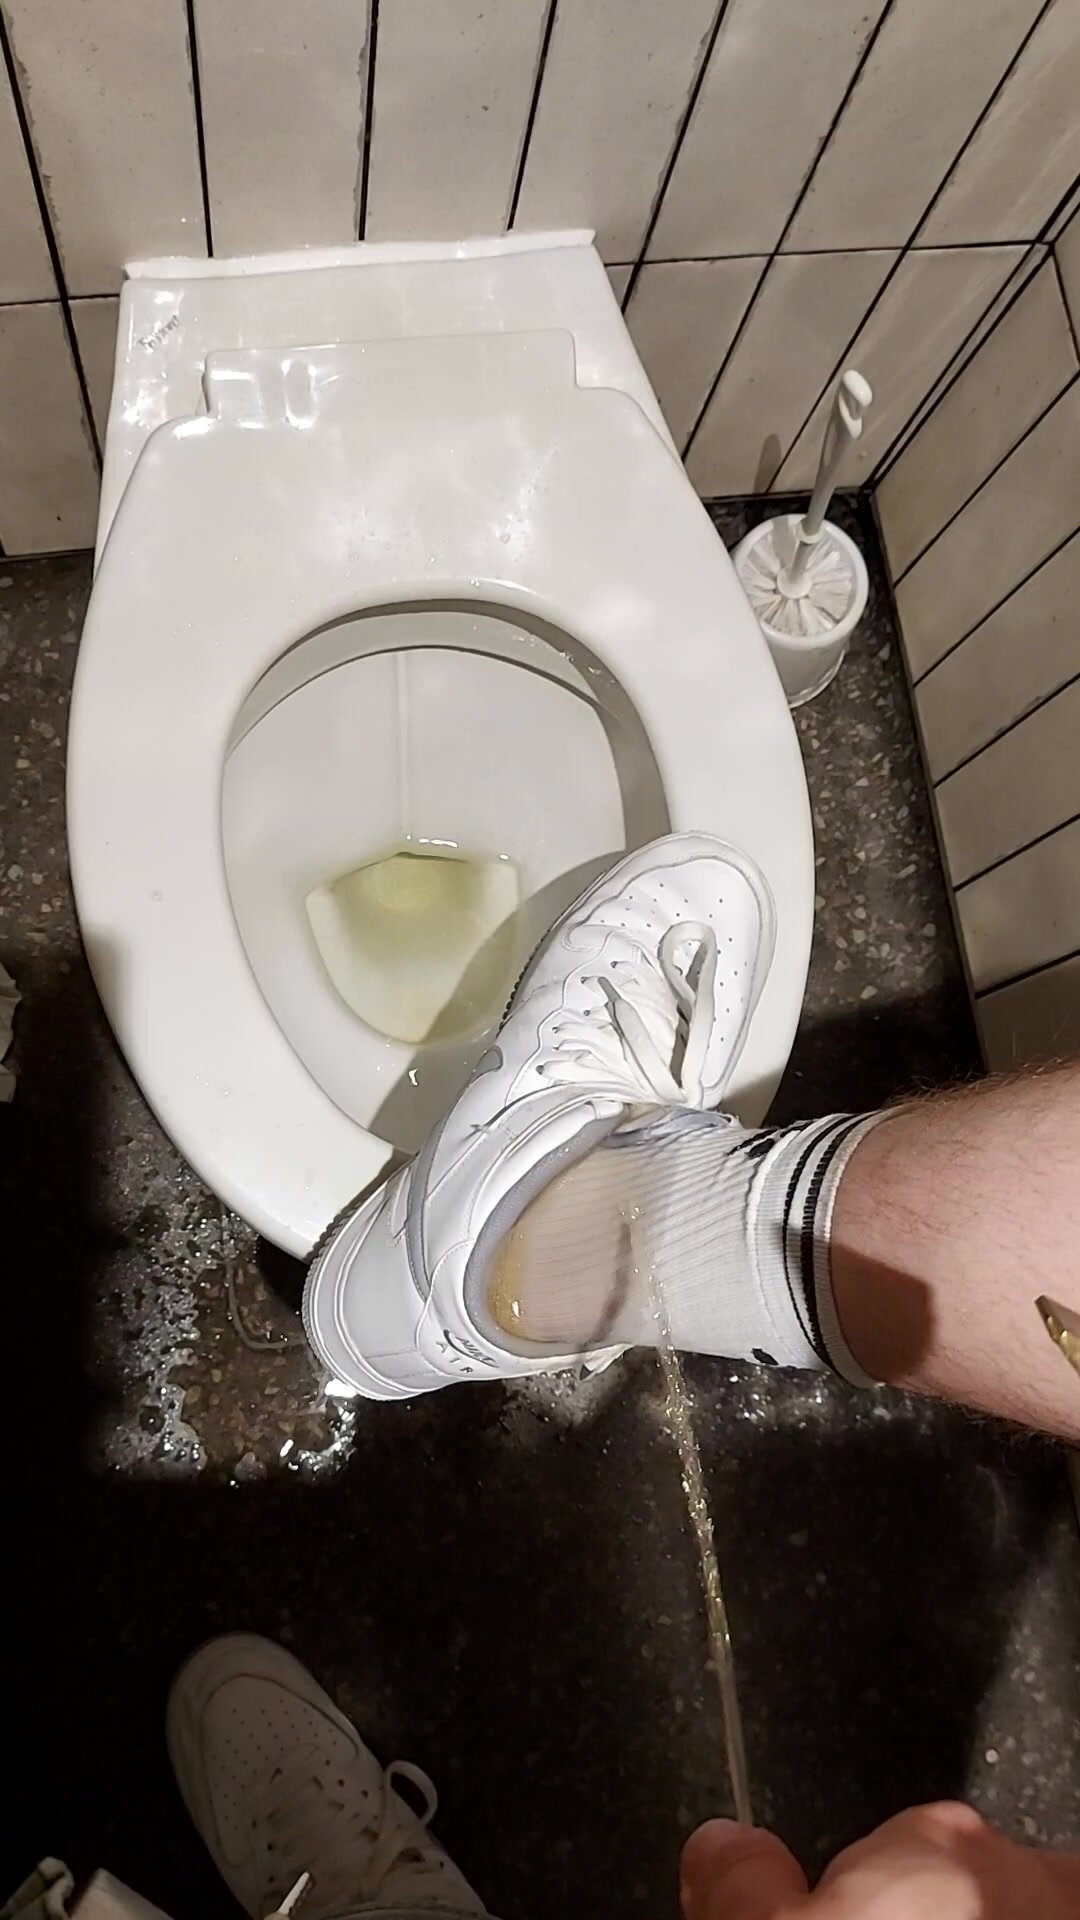 Socks and sneaks piss in public bathroom